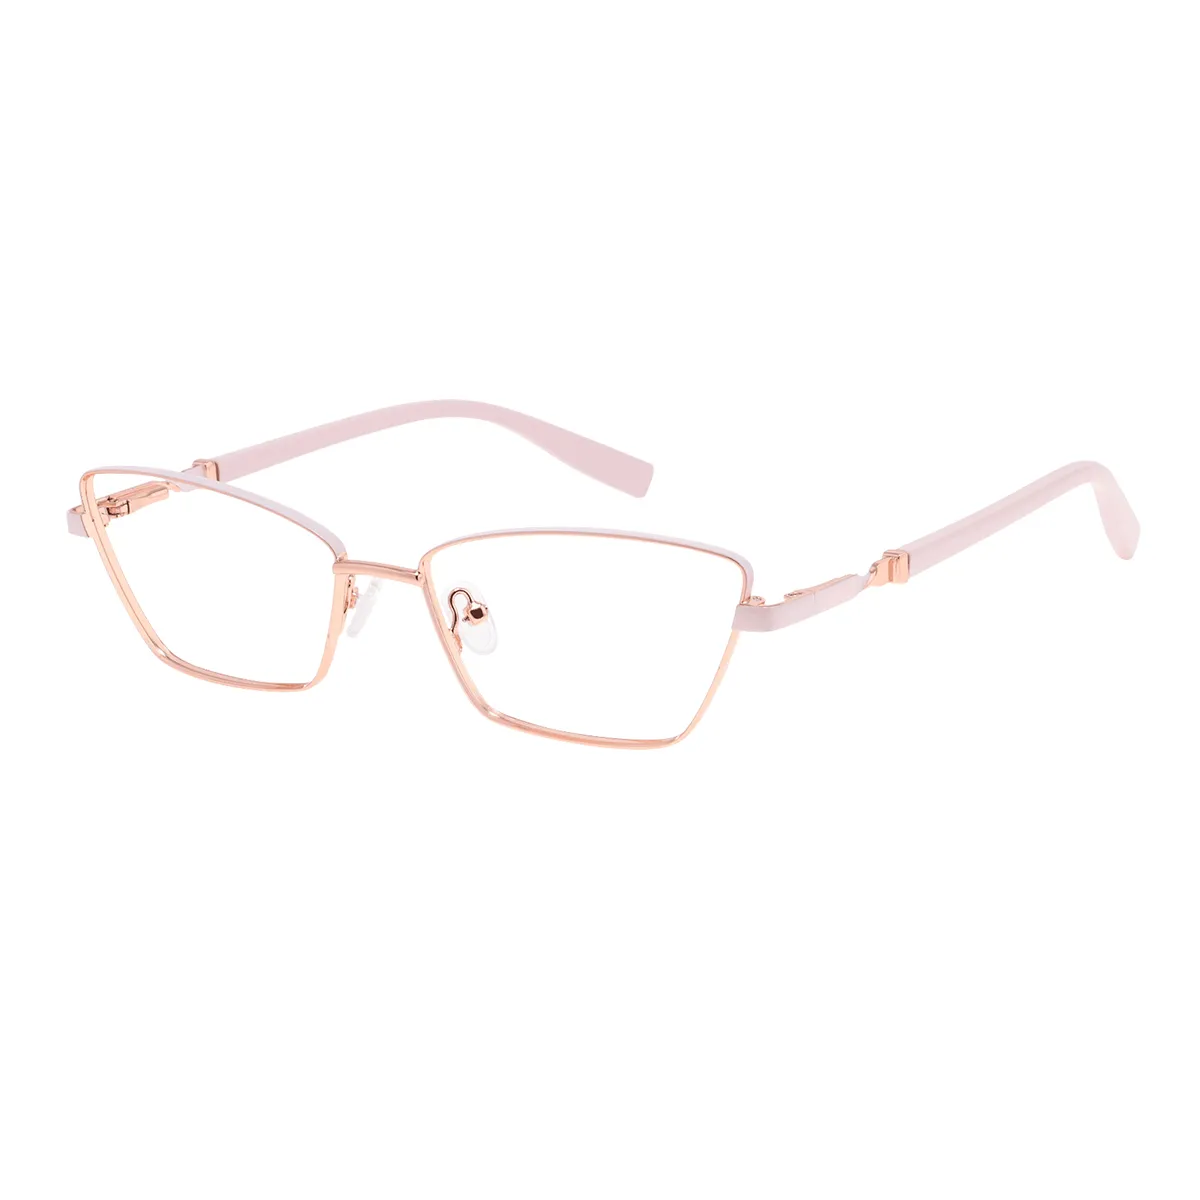 Fashion Cat-eye Rose-Gold Glasses for Women